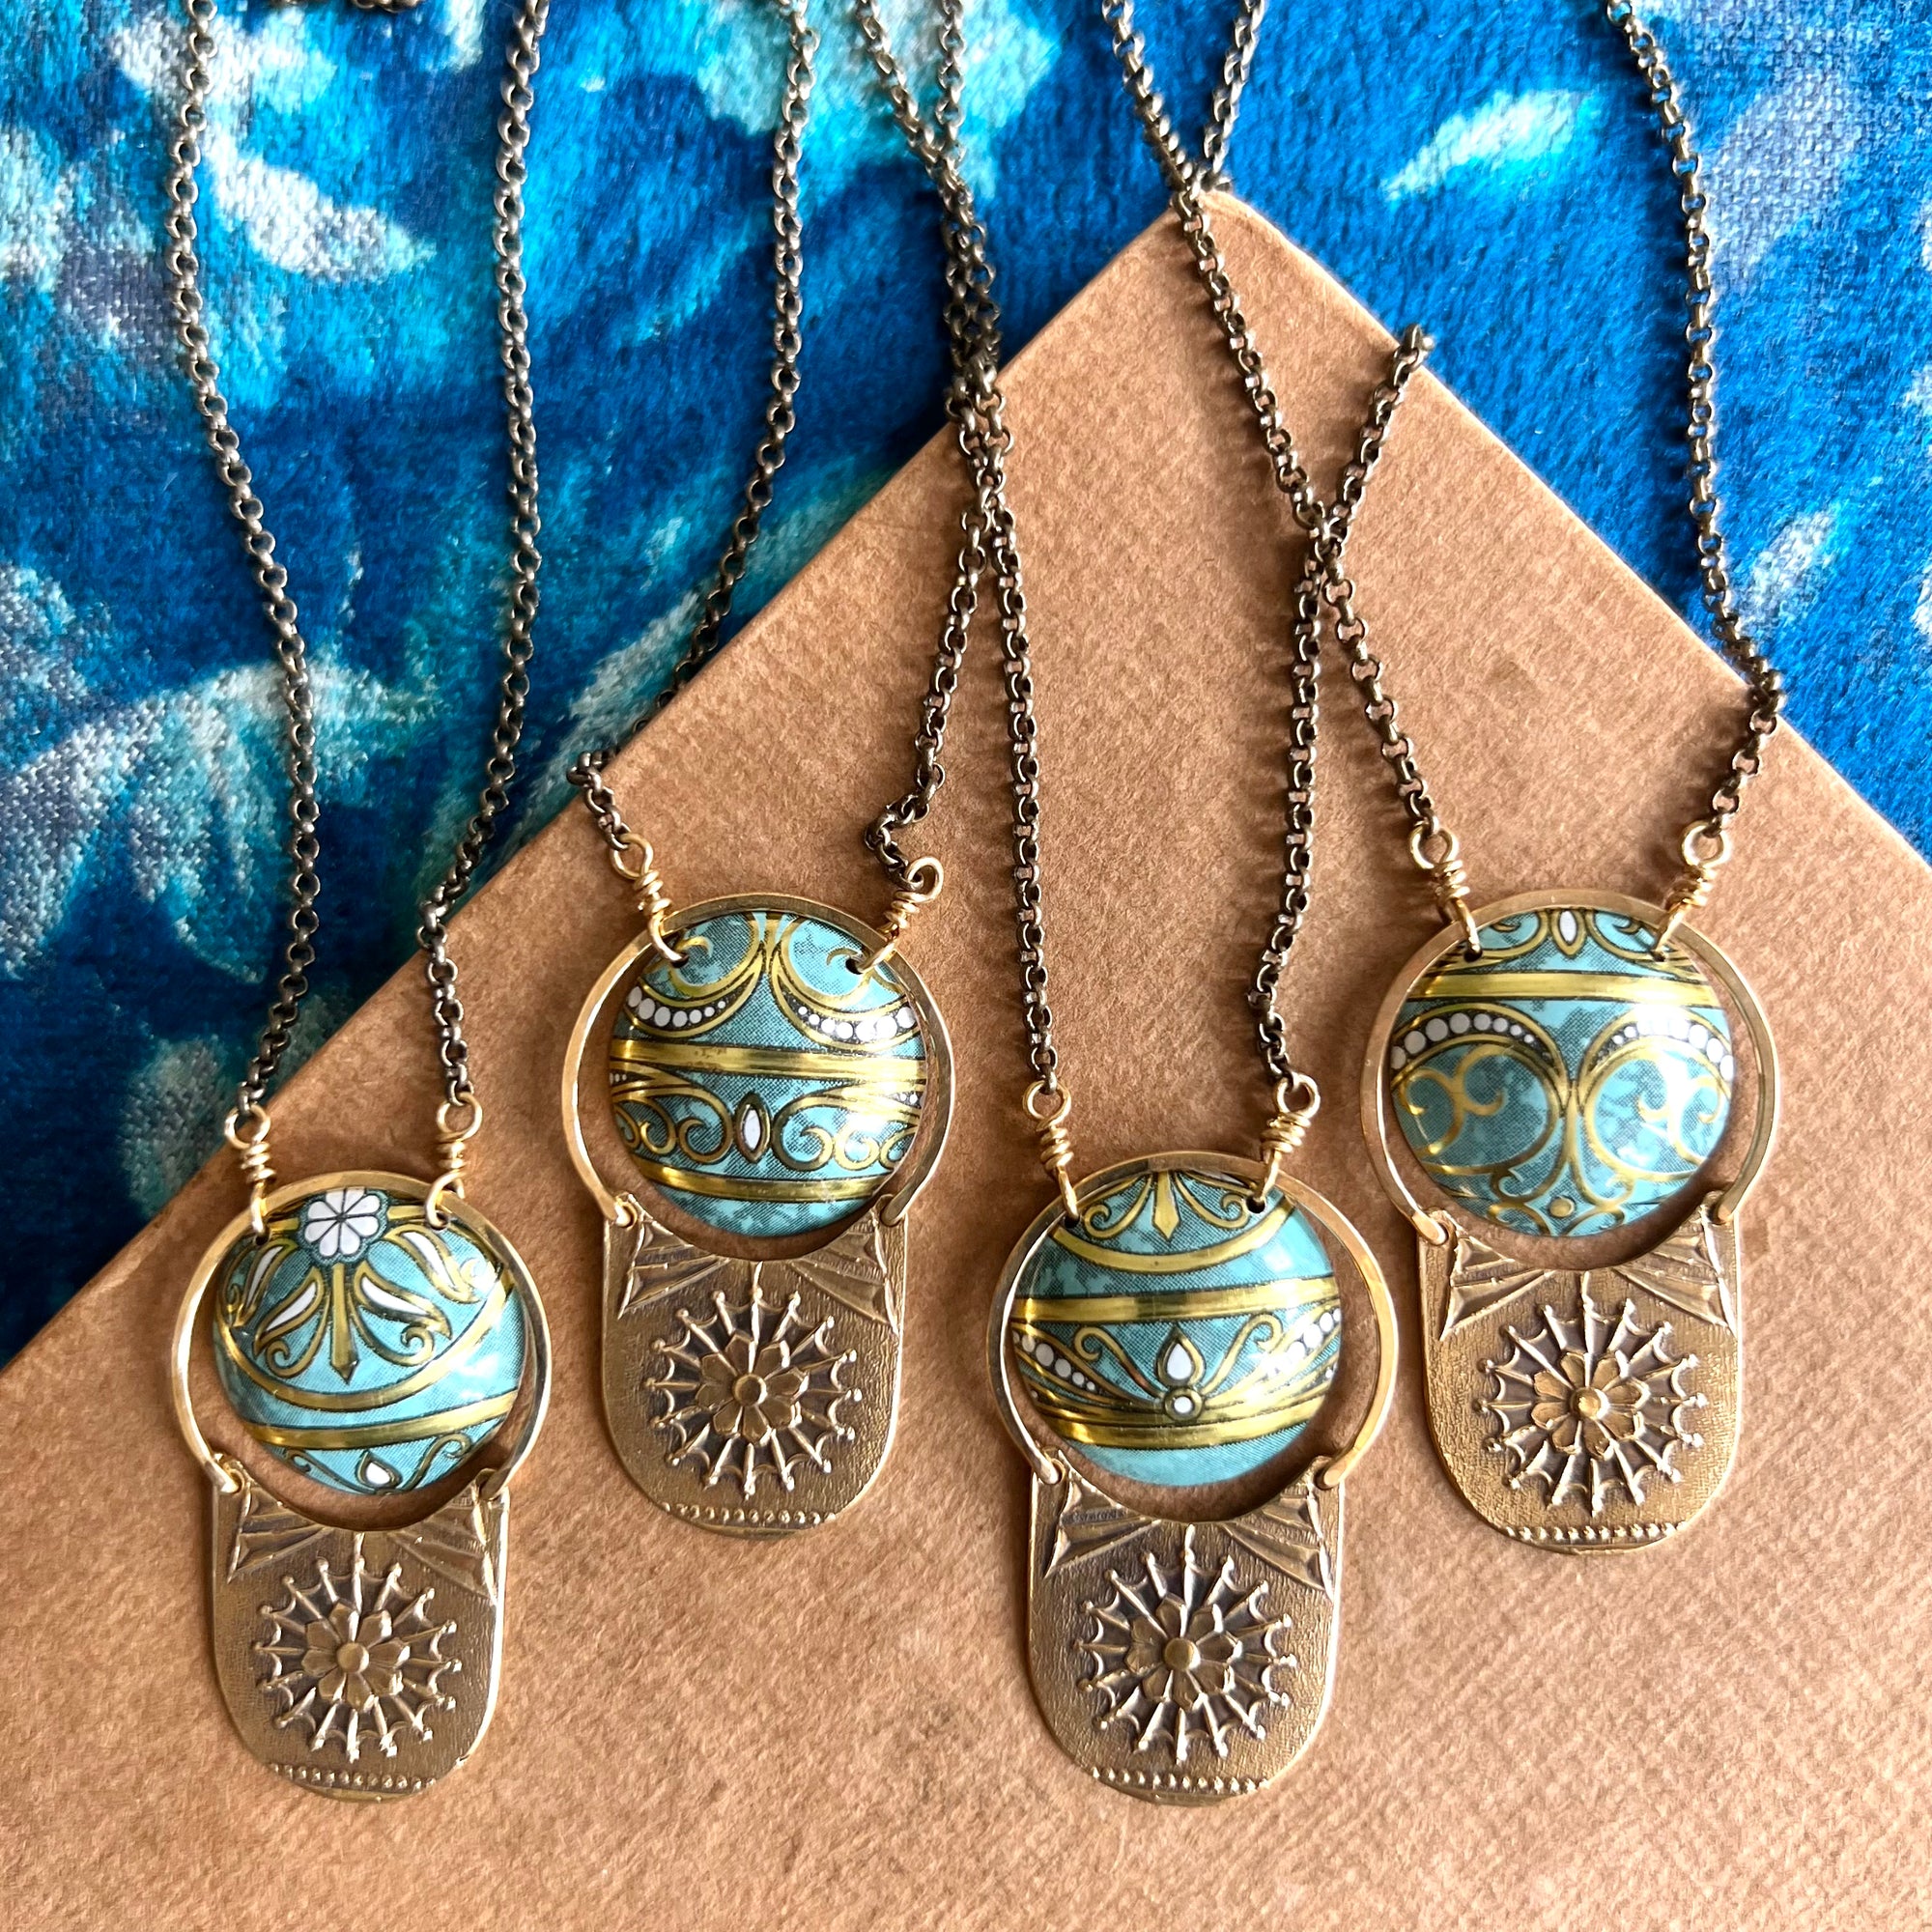 Secret Garden Necklace, Deco Turquoise